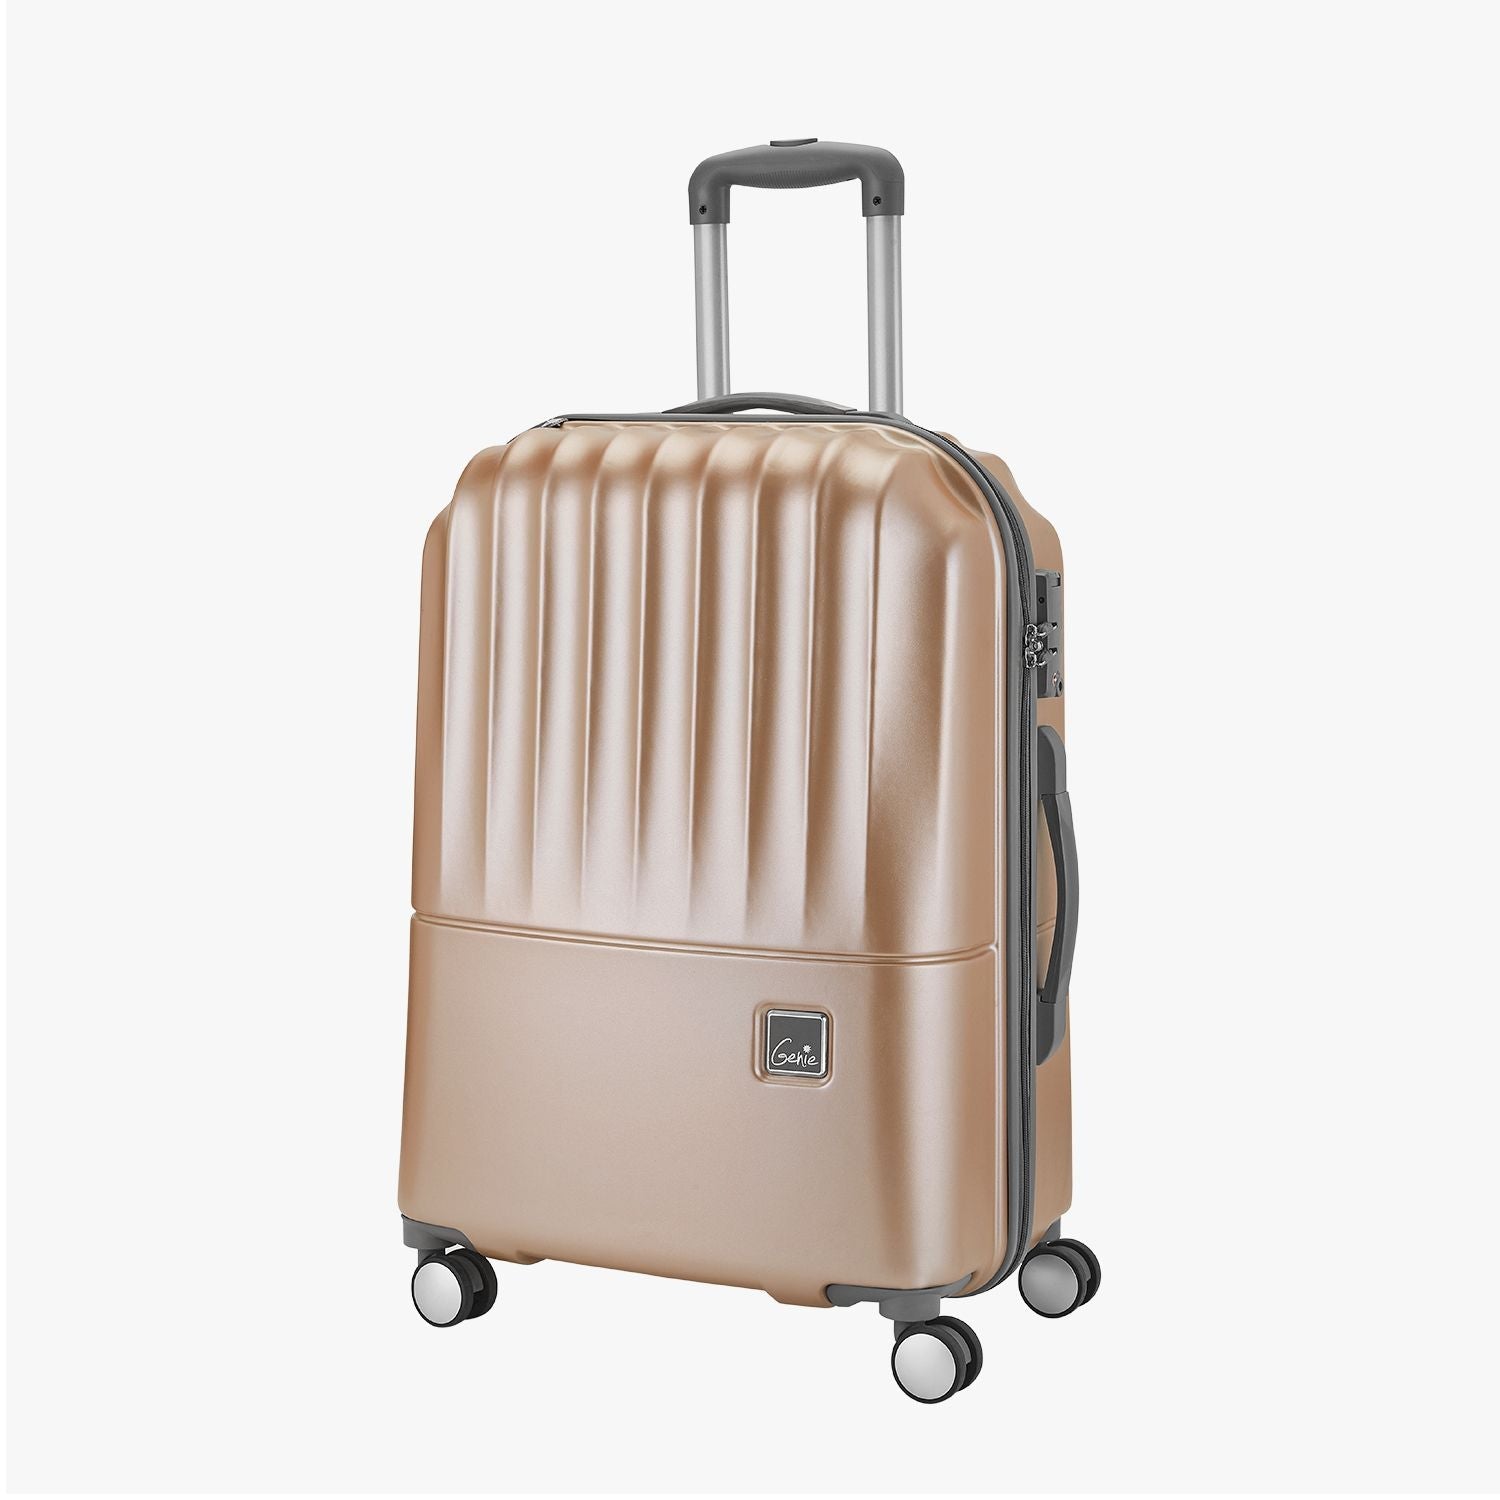 Glam Medium and Large Hard Luggage Combo Set